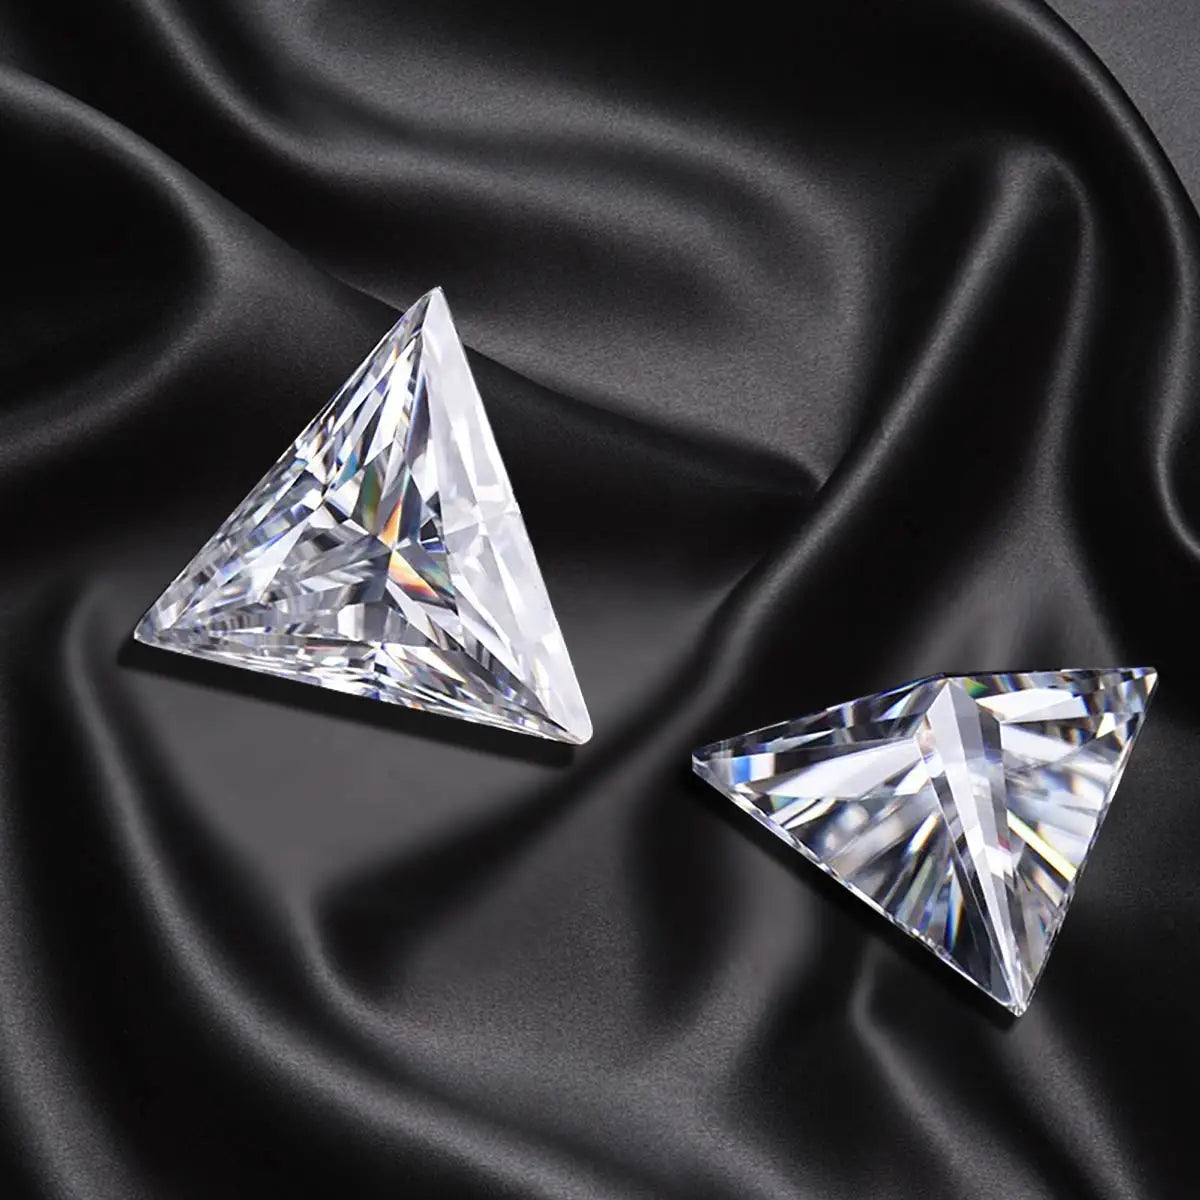 Triangle Moissanite Gemstones. White D Color VVS1. Loose Moissanite.